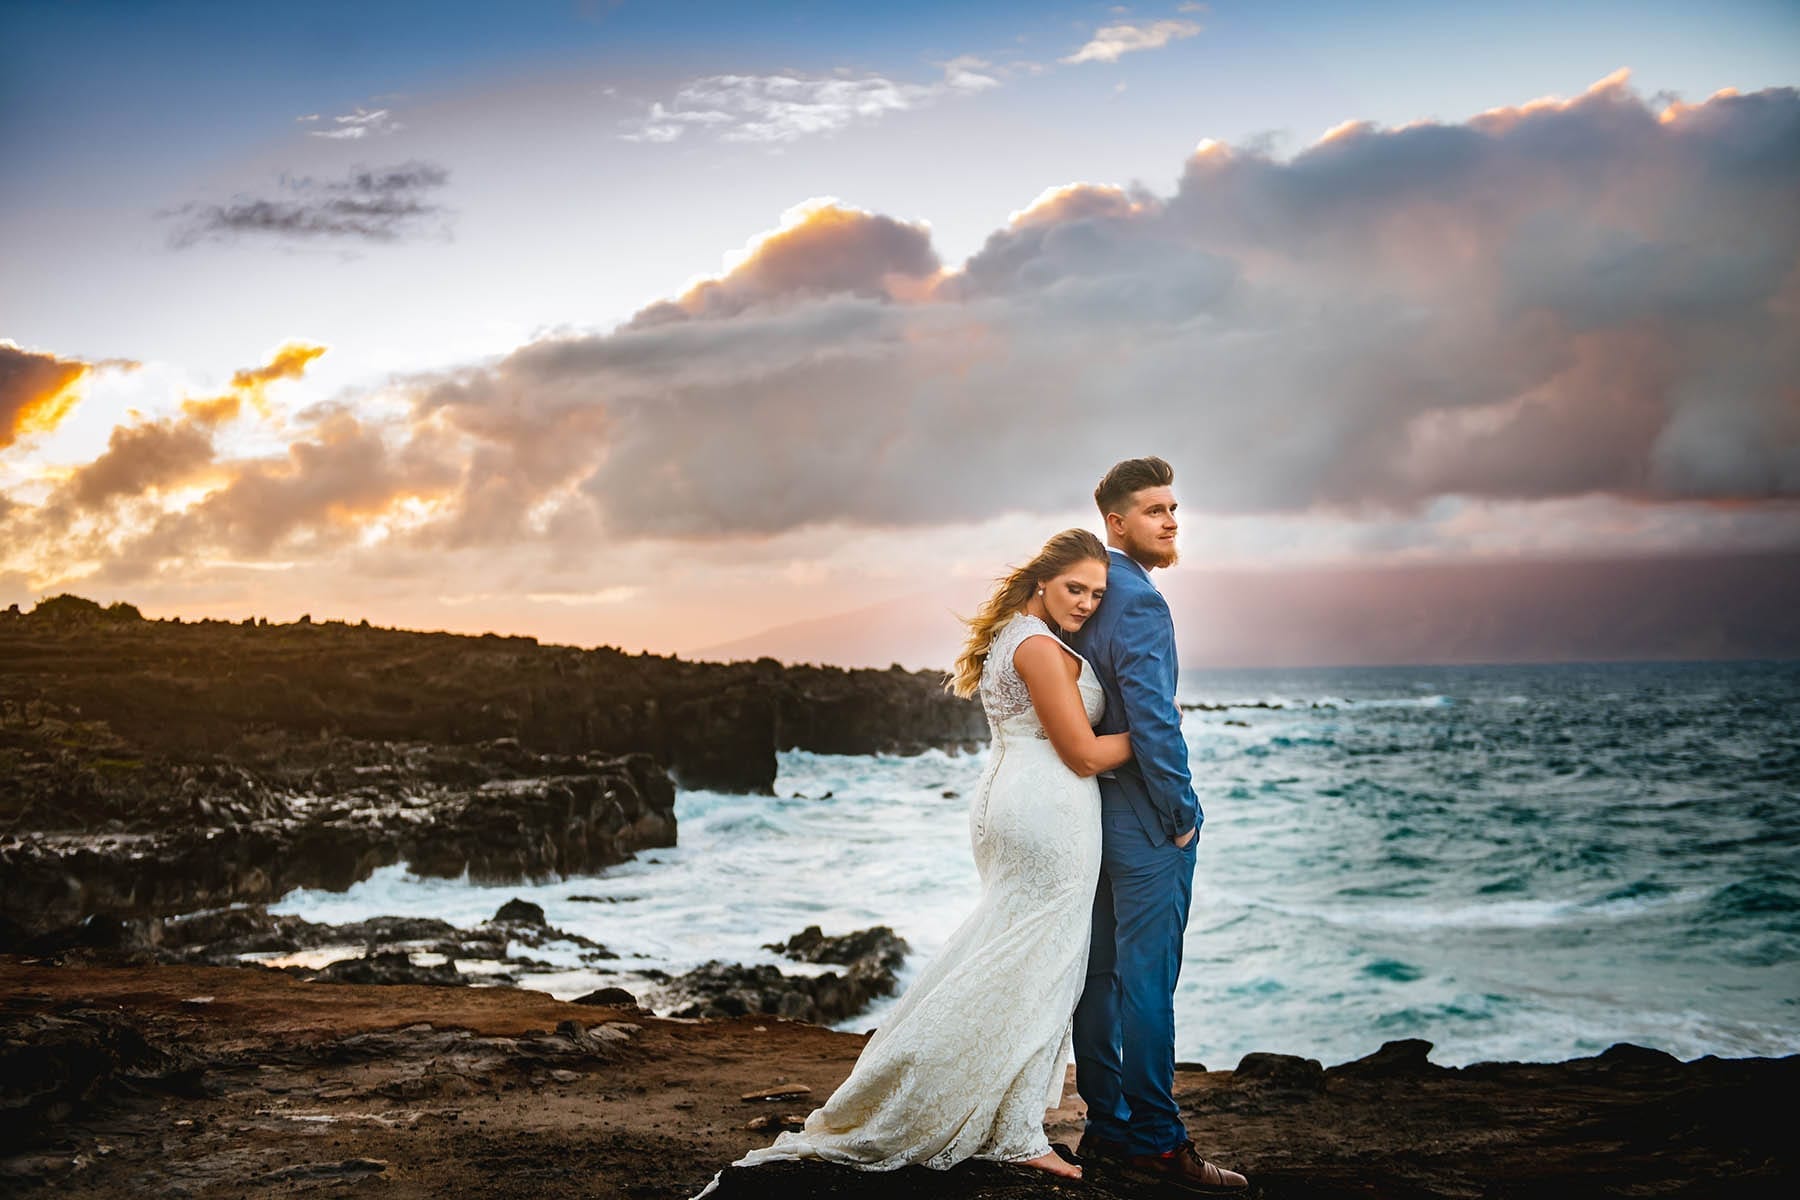 Hawaii sunset elopement on beach